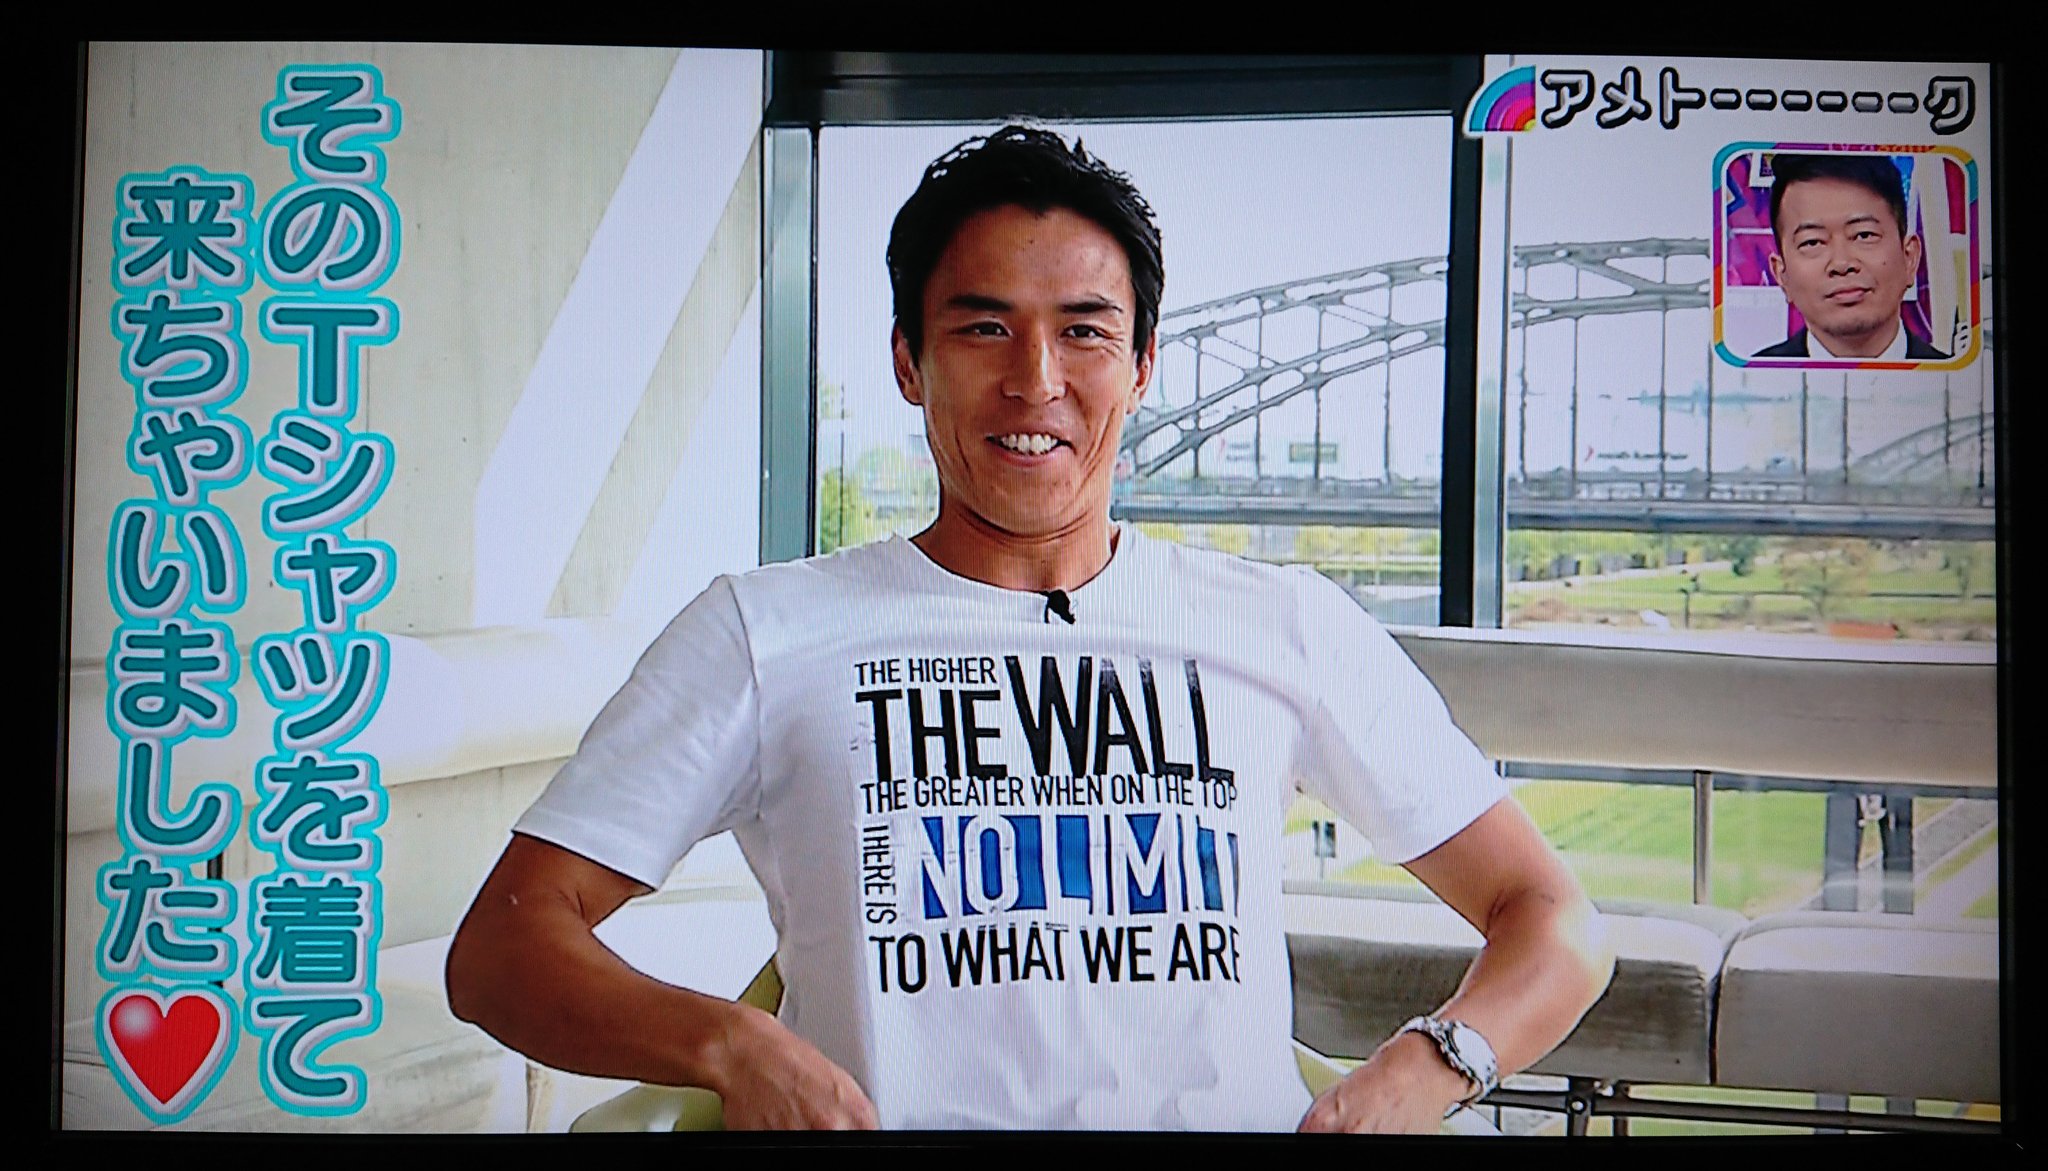 遠藤にしか出せない特別な音 No Twitter ファン憧れの終わりなきtシャツに長谷部先生もこのどや顔である T Co Vjx8dfyo3j Twitter